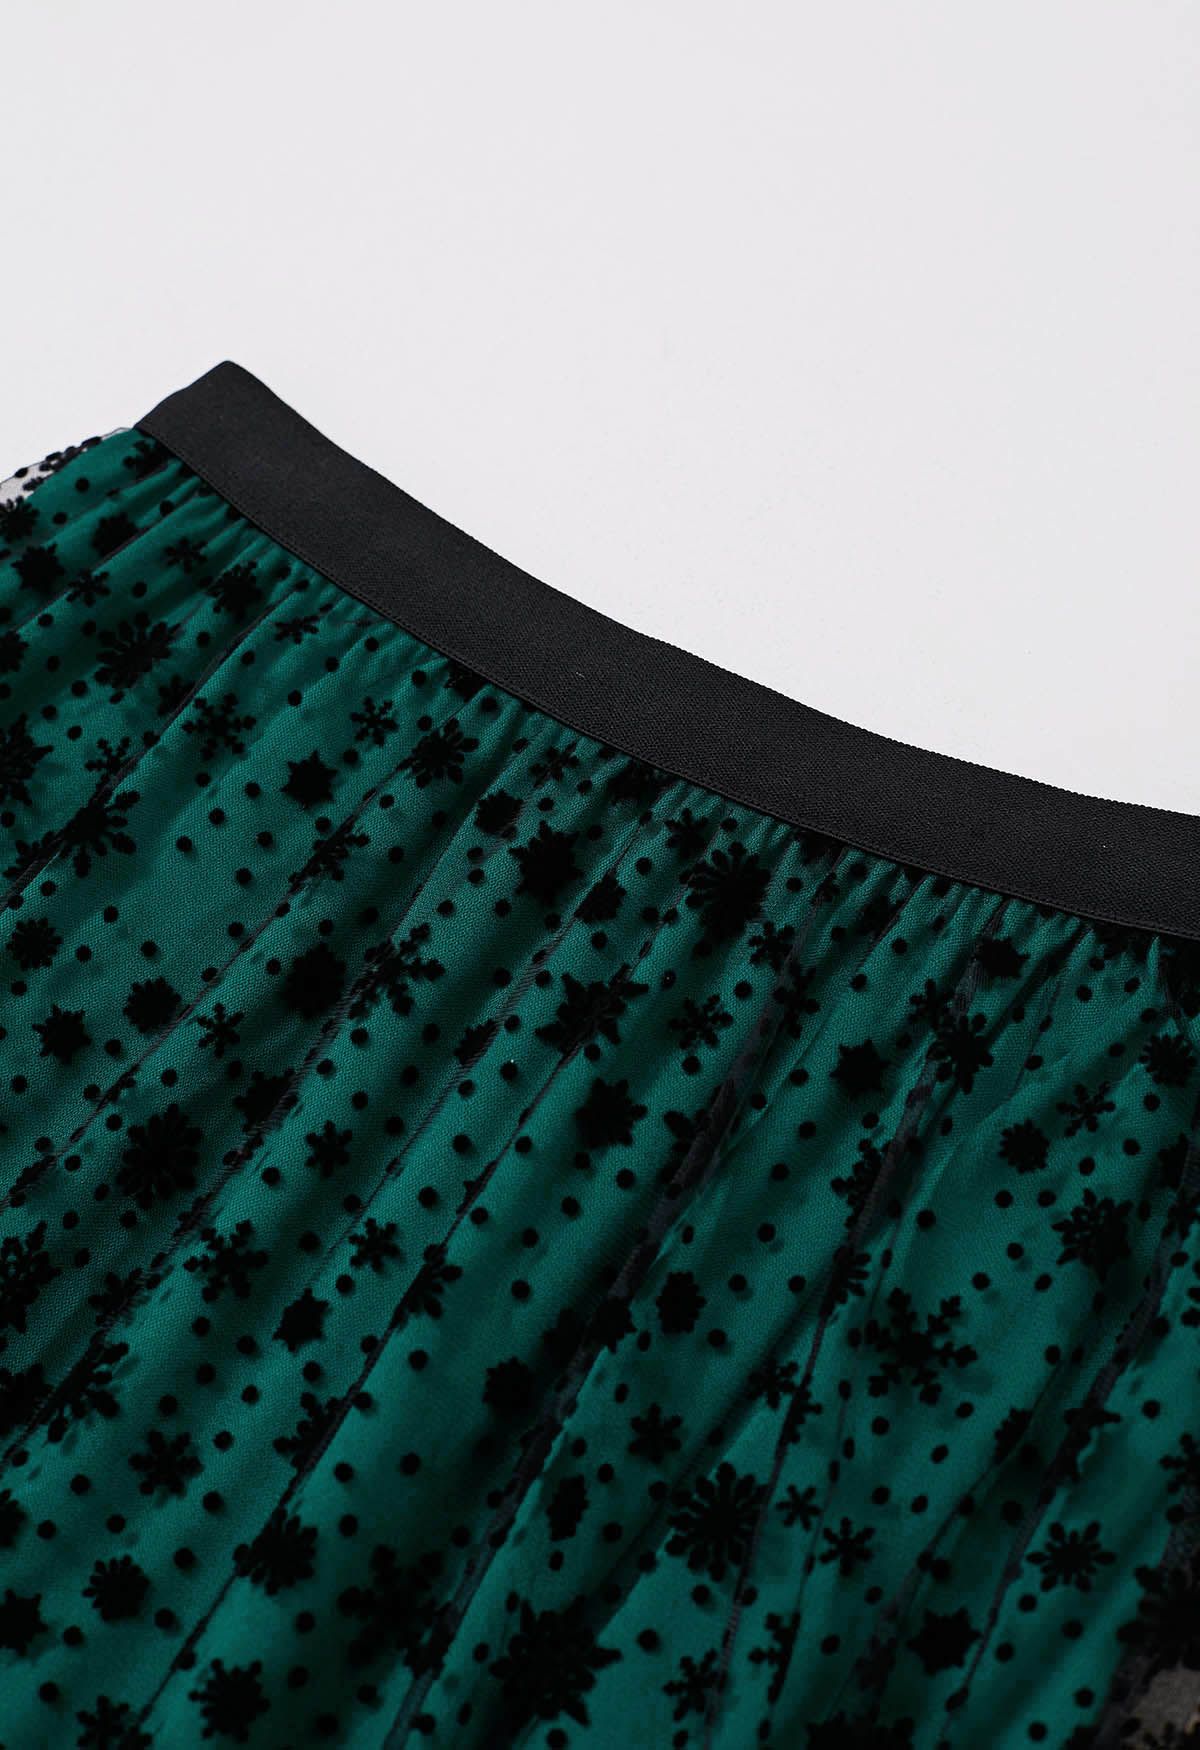 Velvet Snowflake Mesh Tulle Midi Skirt in Dark Green